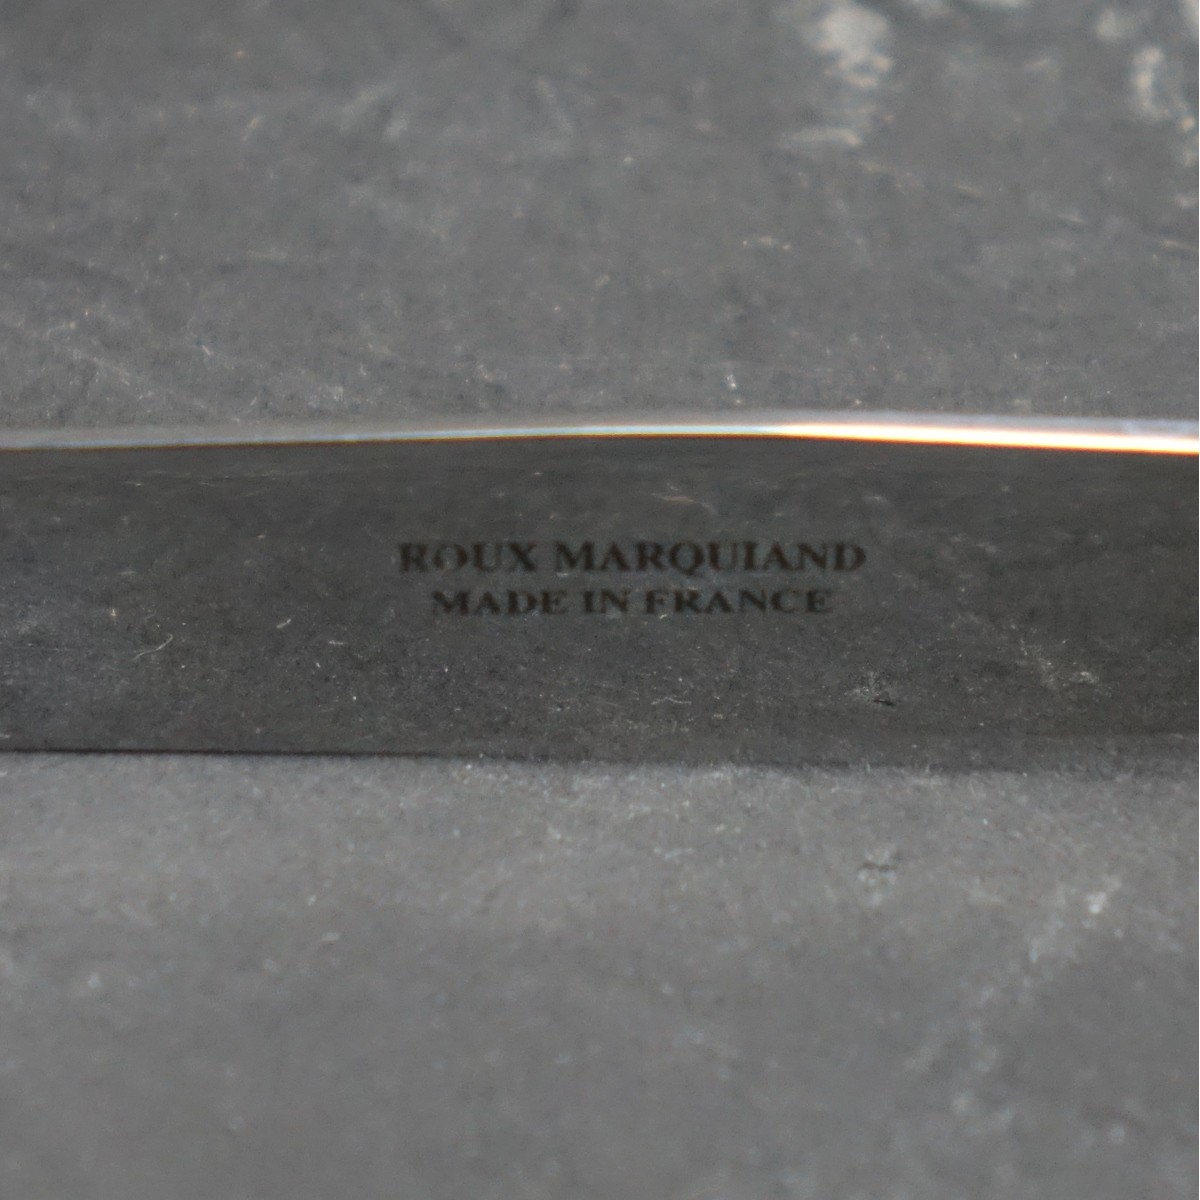 3 pcs Christofle & Roux-Marquiand Serving Pieces